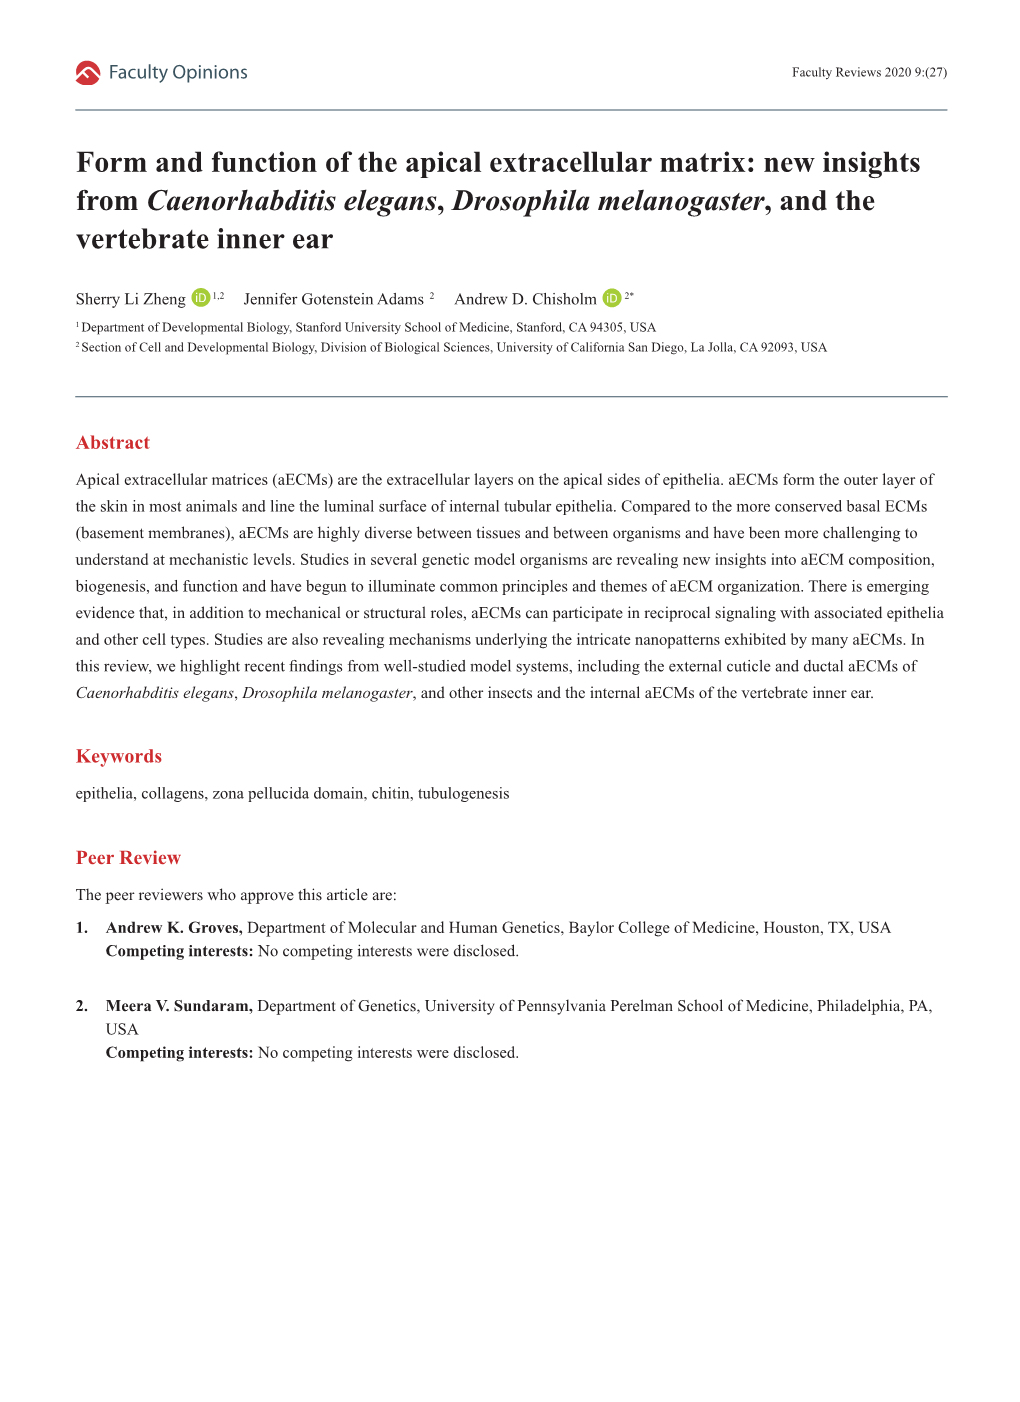 New Insights from Caenorhabditis Elegans, Drosophila Melanogaster, and the Vertebrate Inner Ear